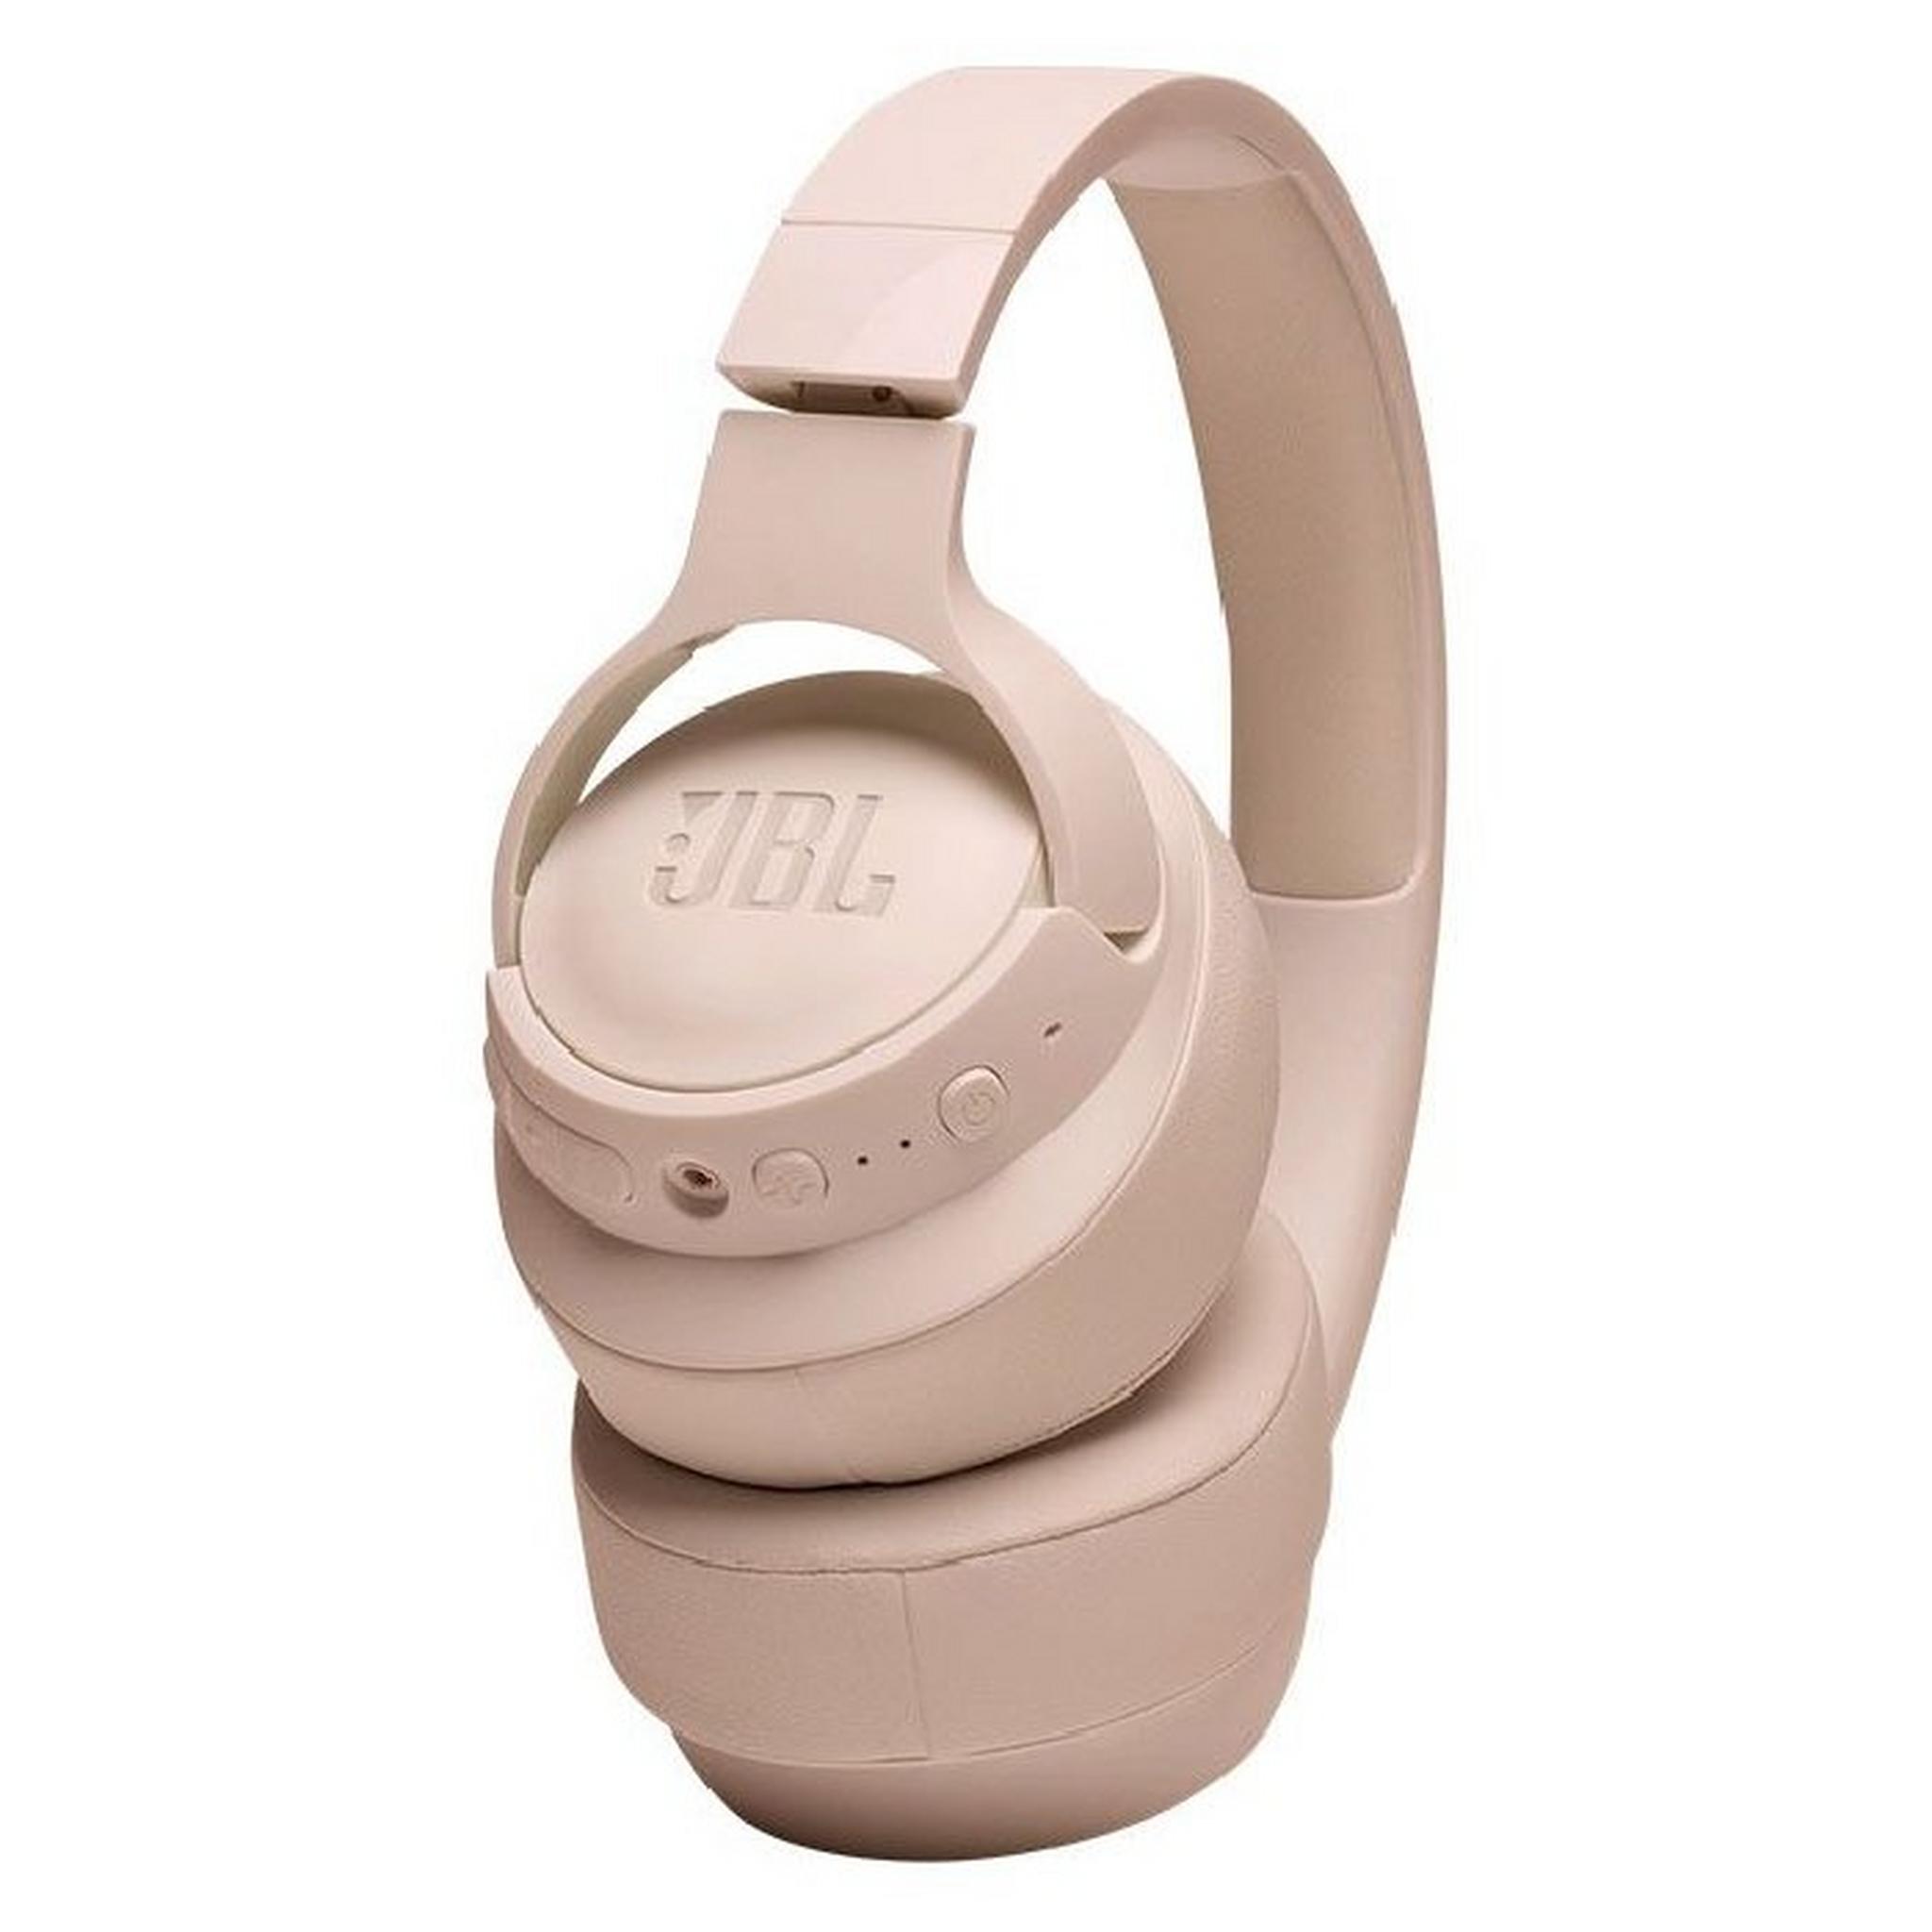 سماعة رأس جي بي ال تيون 760 ان سي لاسلكية مع تقنية إلغاء الضوضاء 35 ساعة - بيج